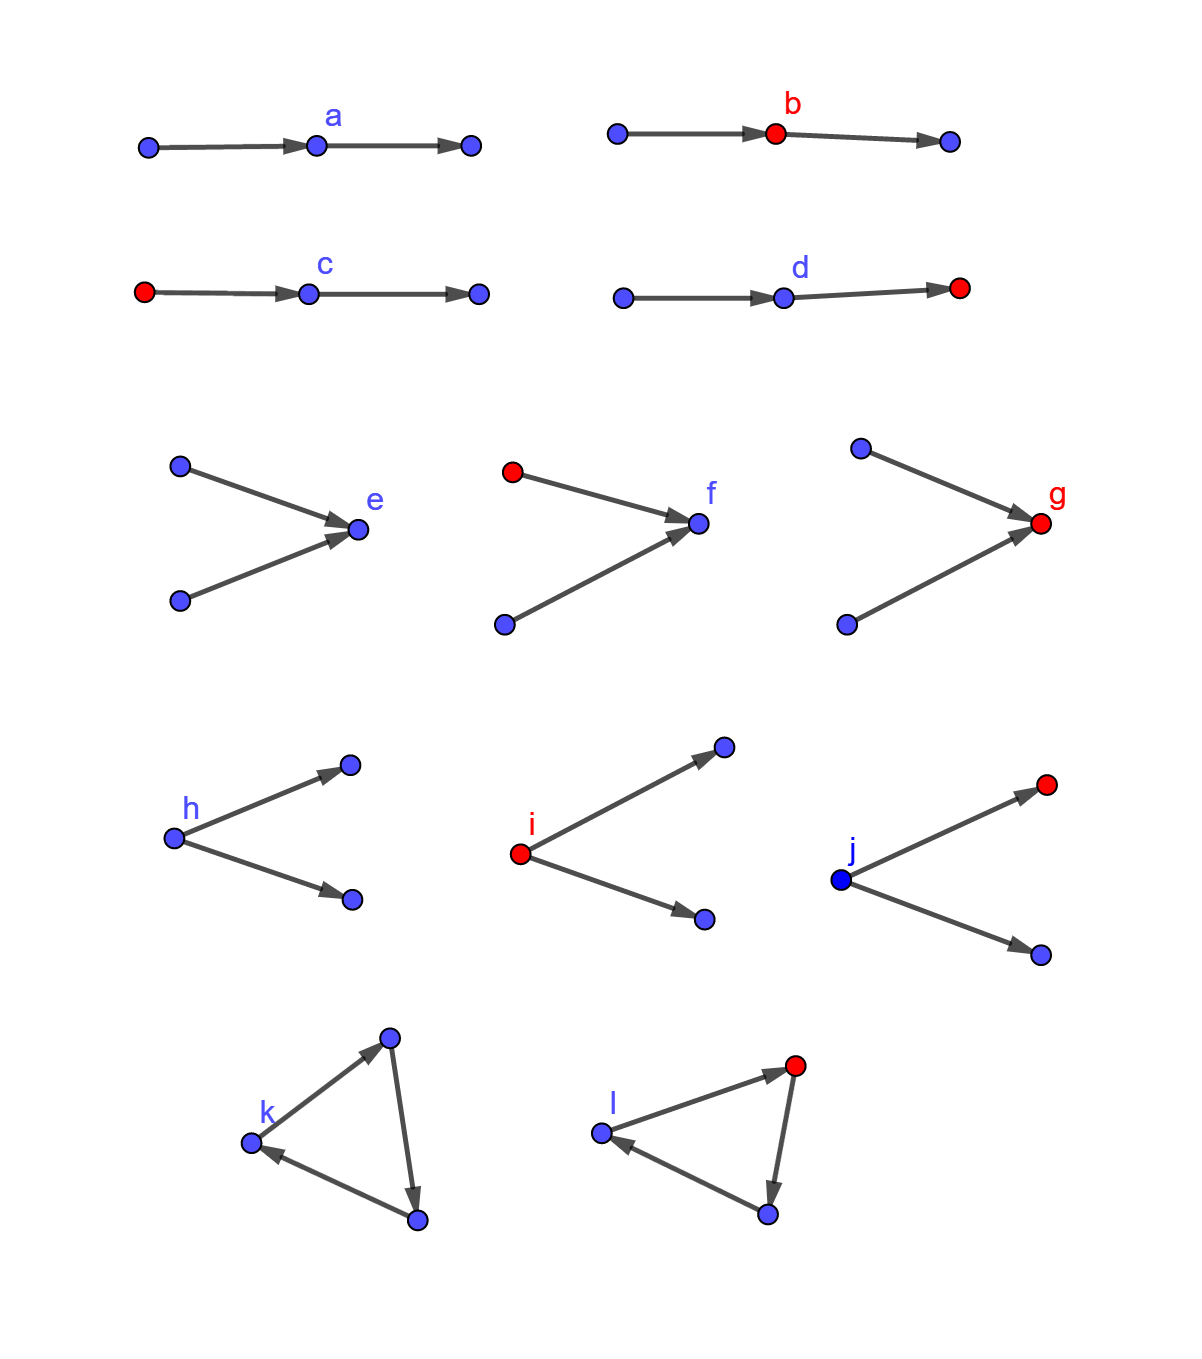 图1. 12种基础结构